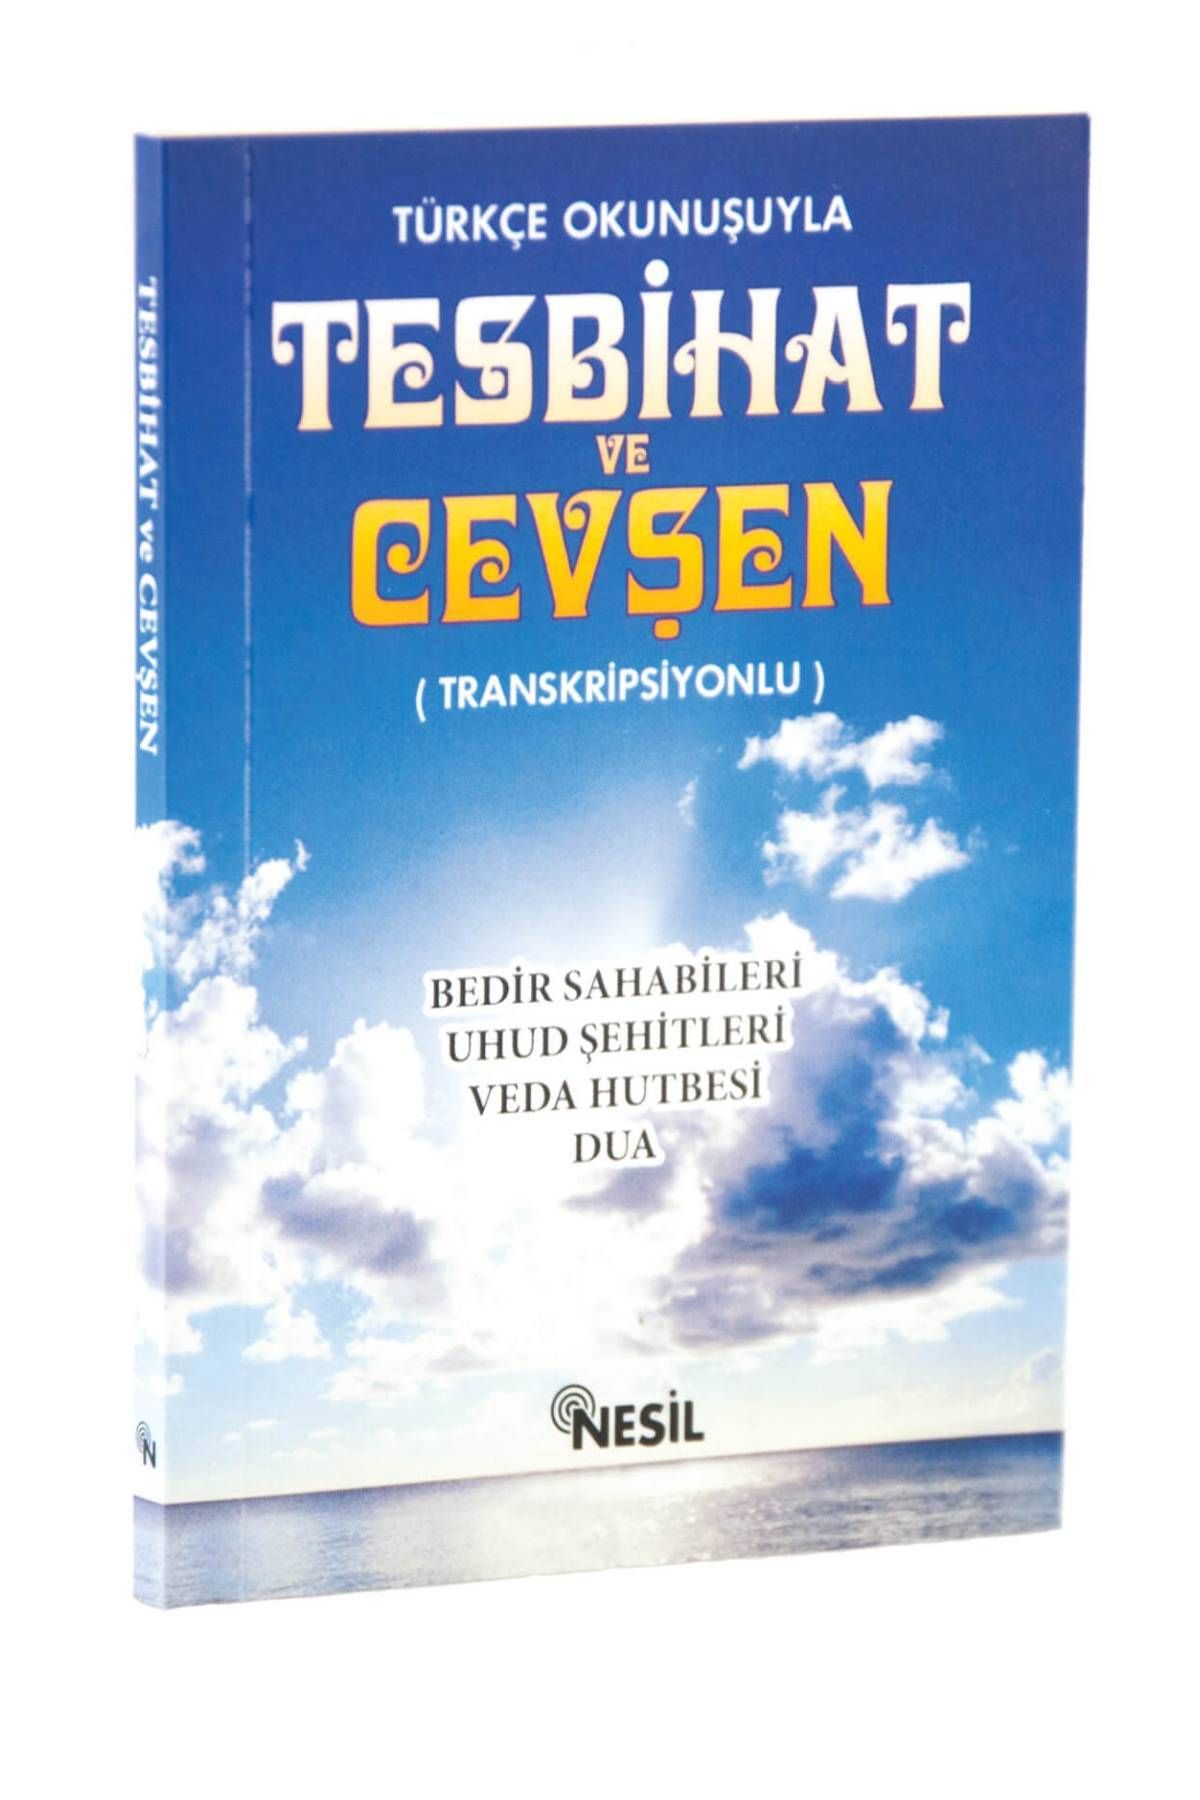 Публикации Nesil Tesbihat и Cevşen с турецким произношением 9799756503101